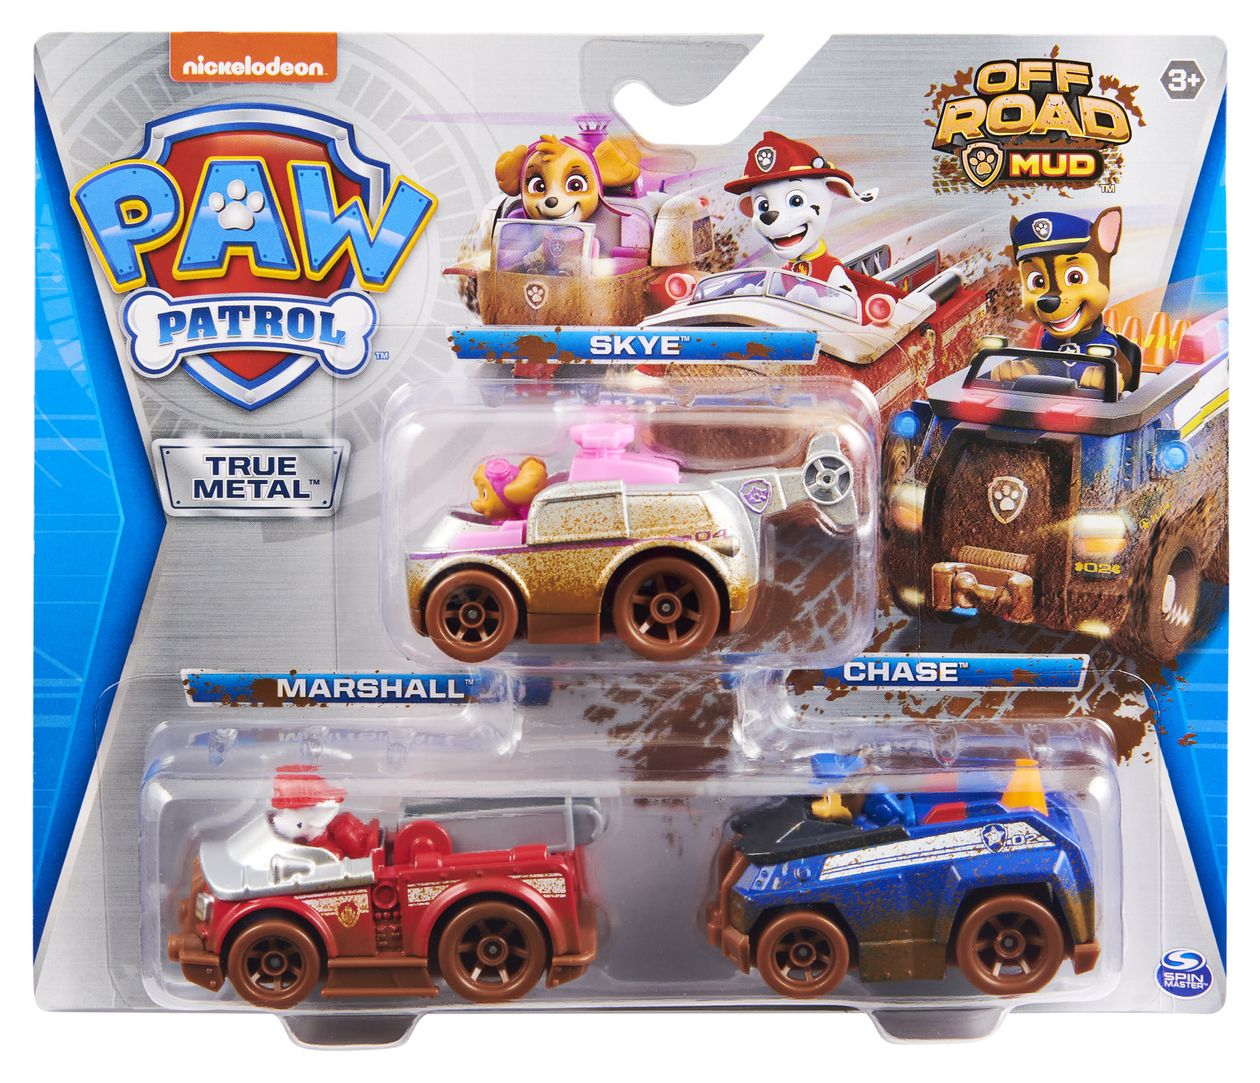 Paw Patrol True Metal 3er-Pack mit 3 Metall-Spielzeugautos von Skye, Chase und Marshall, Maßstab 1:55, für Kinder ab 3 Jahren, Design mit Offroad-Schlamm-Dekor 